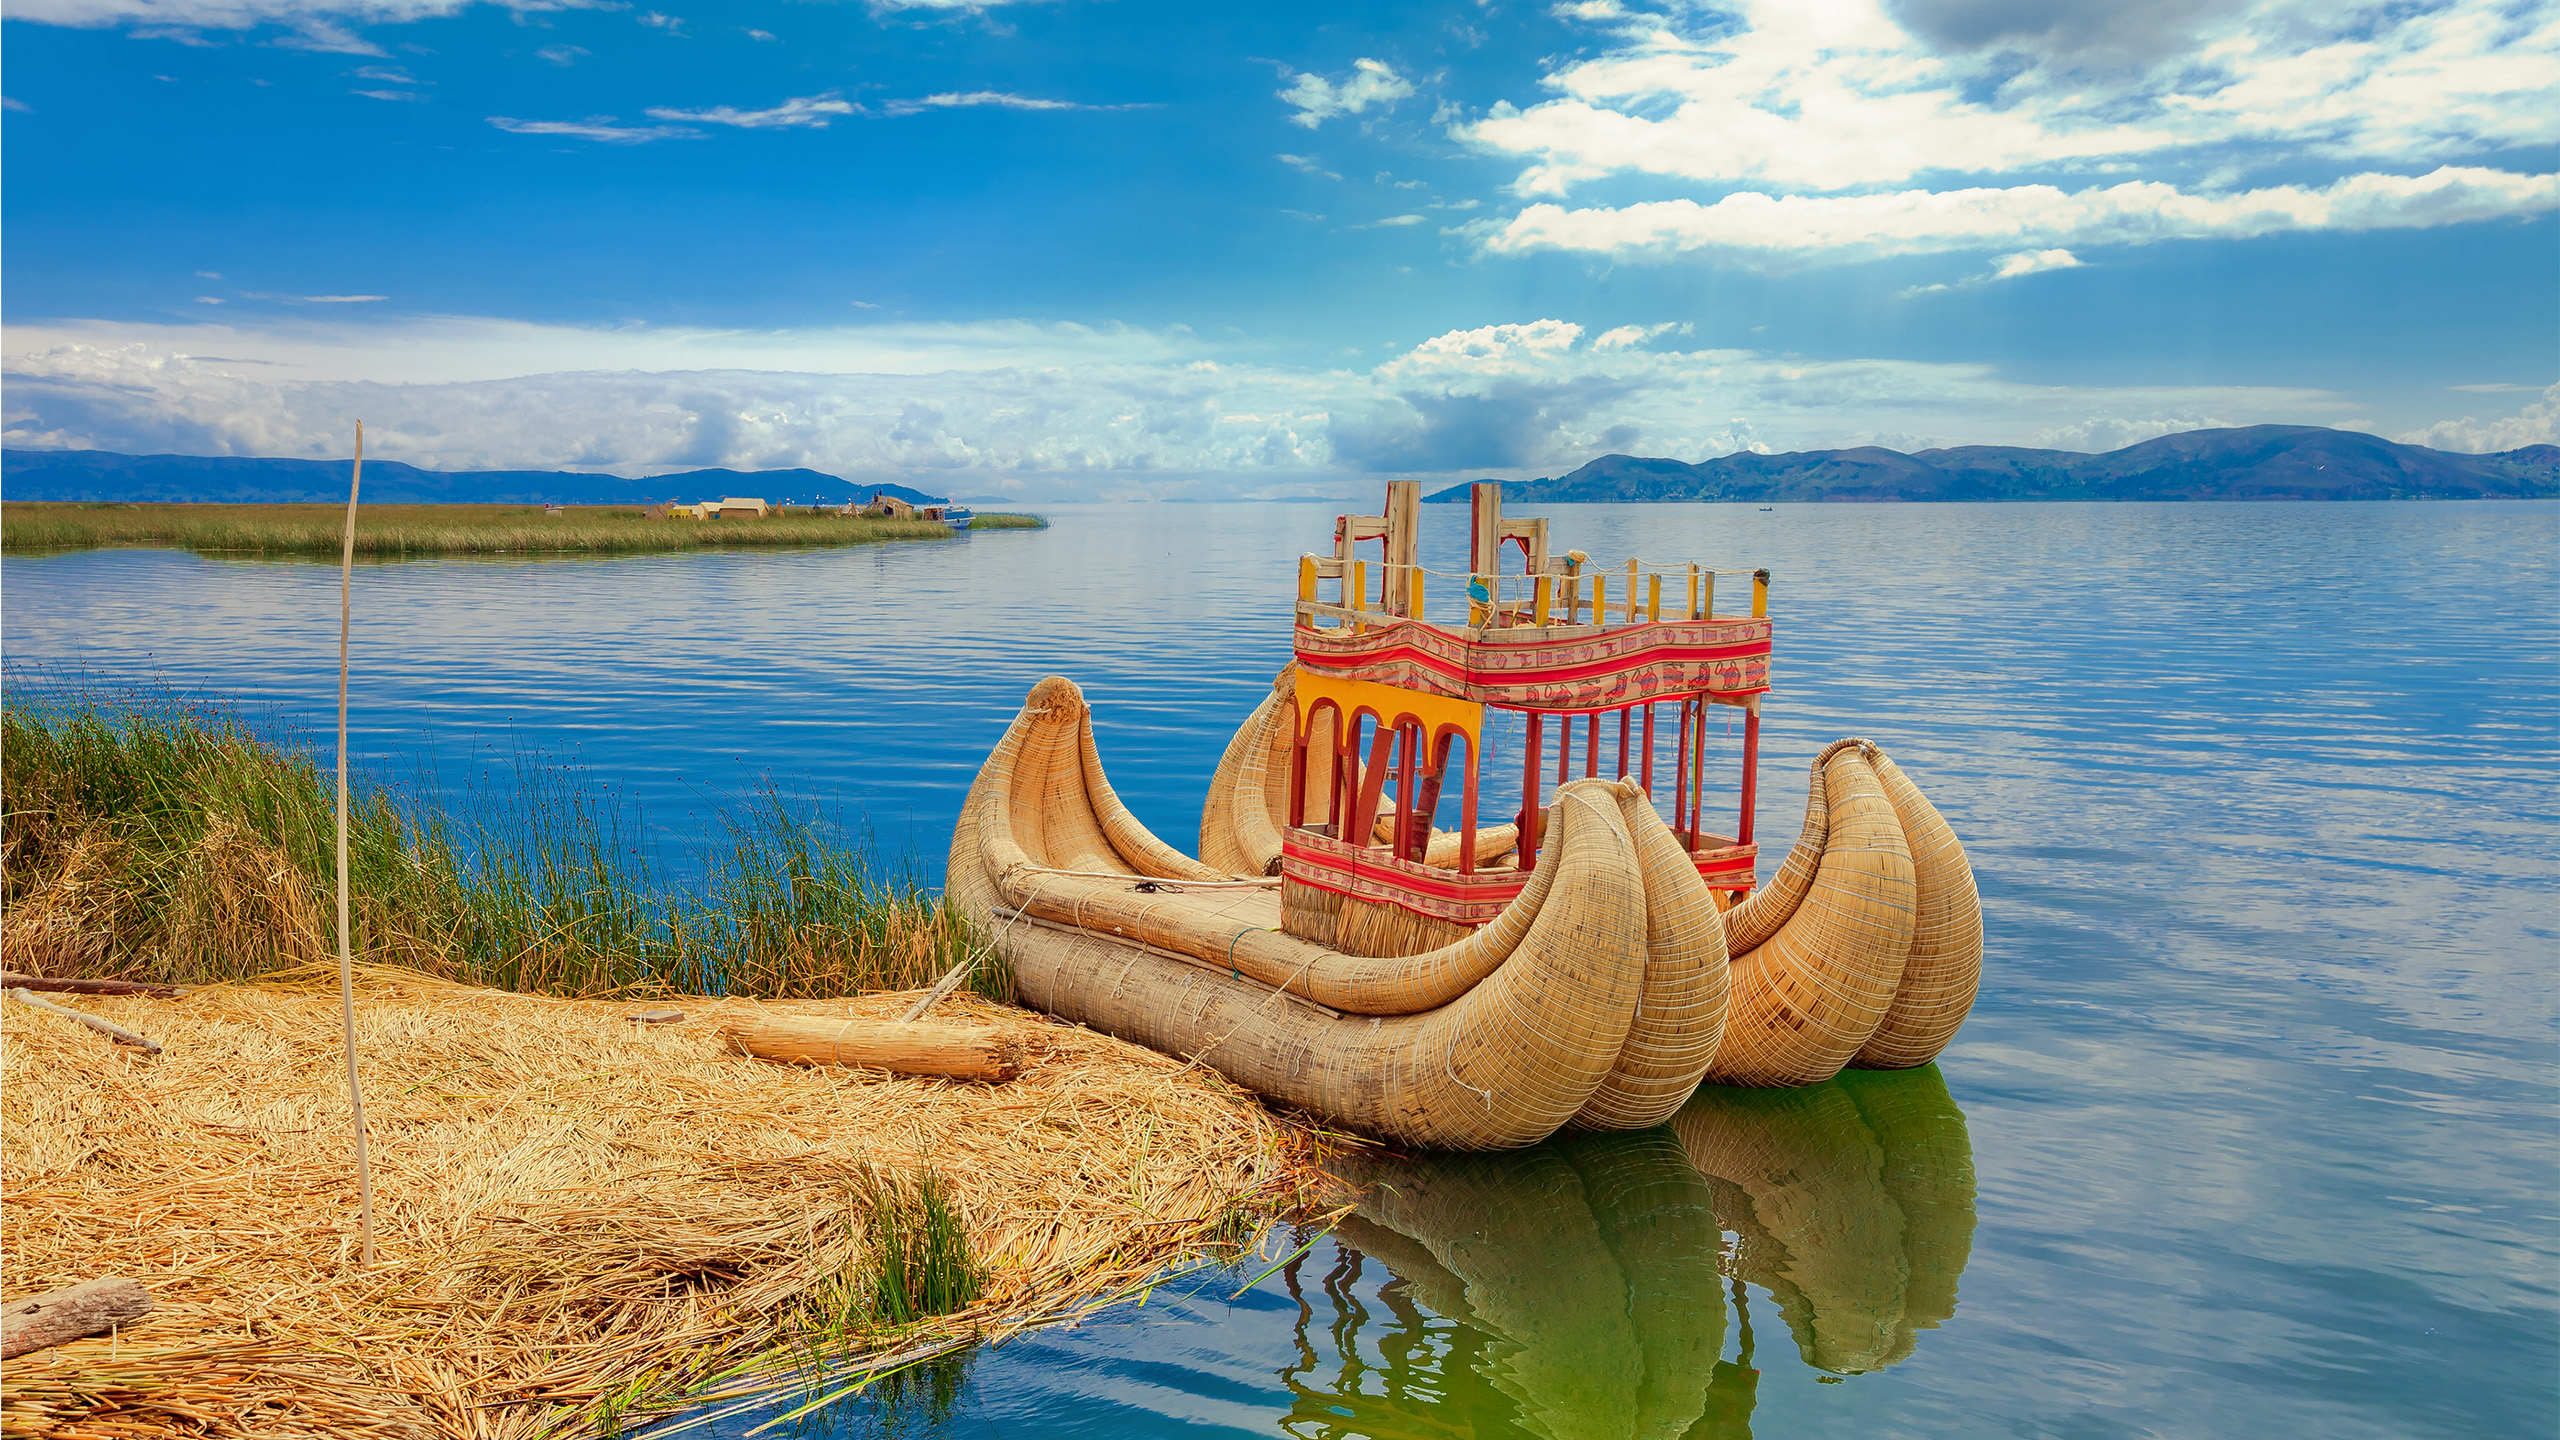 Aus dem Totora-Schilf werden traditionelle Boote gefertigt. | Milton Rodriguez, Shutterstock